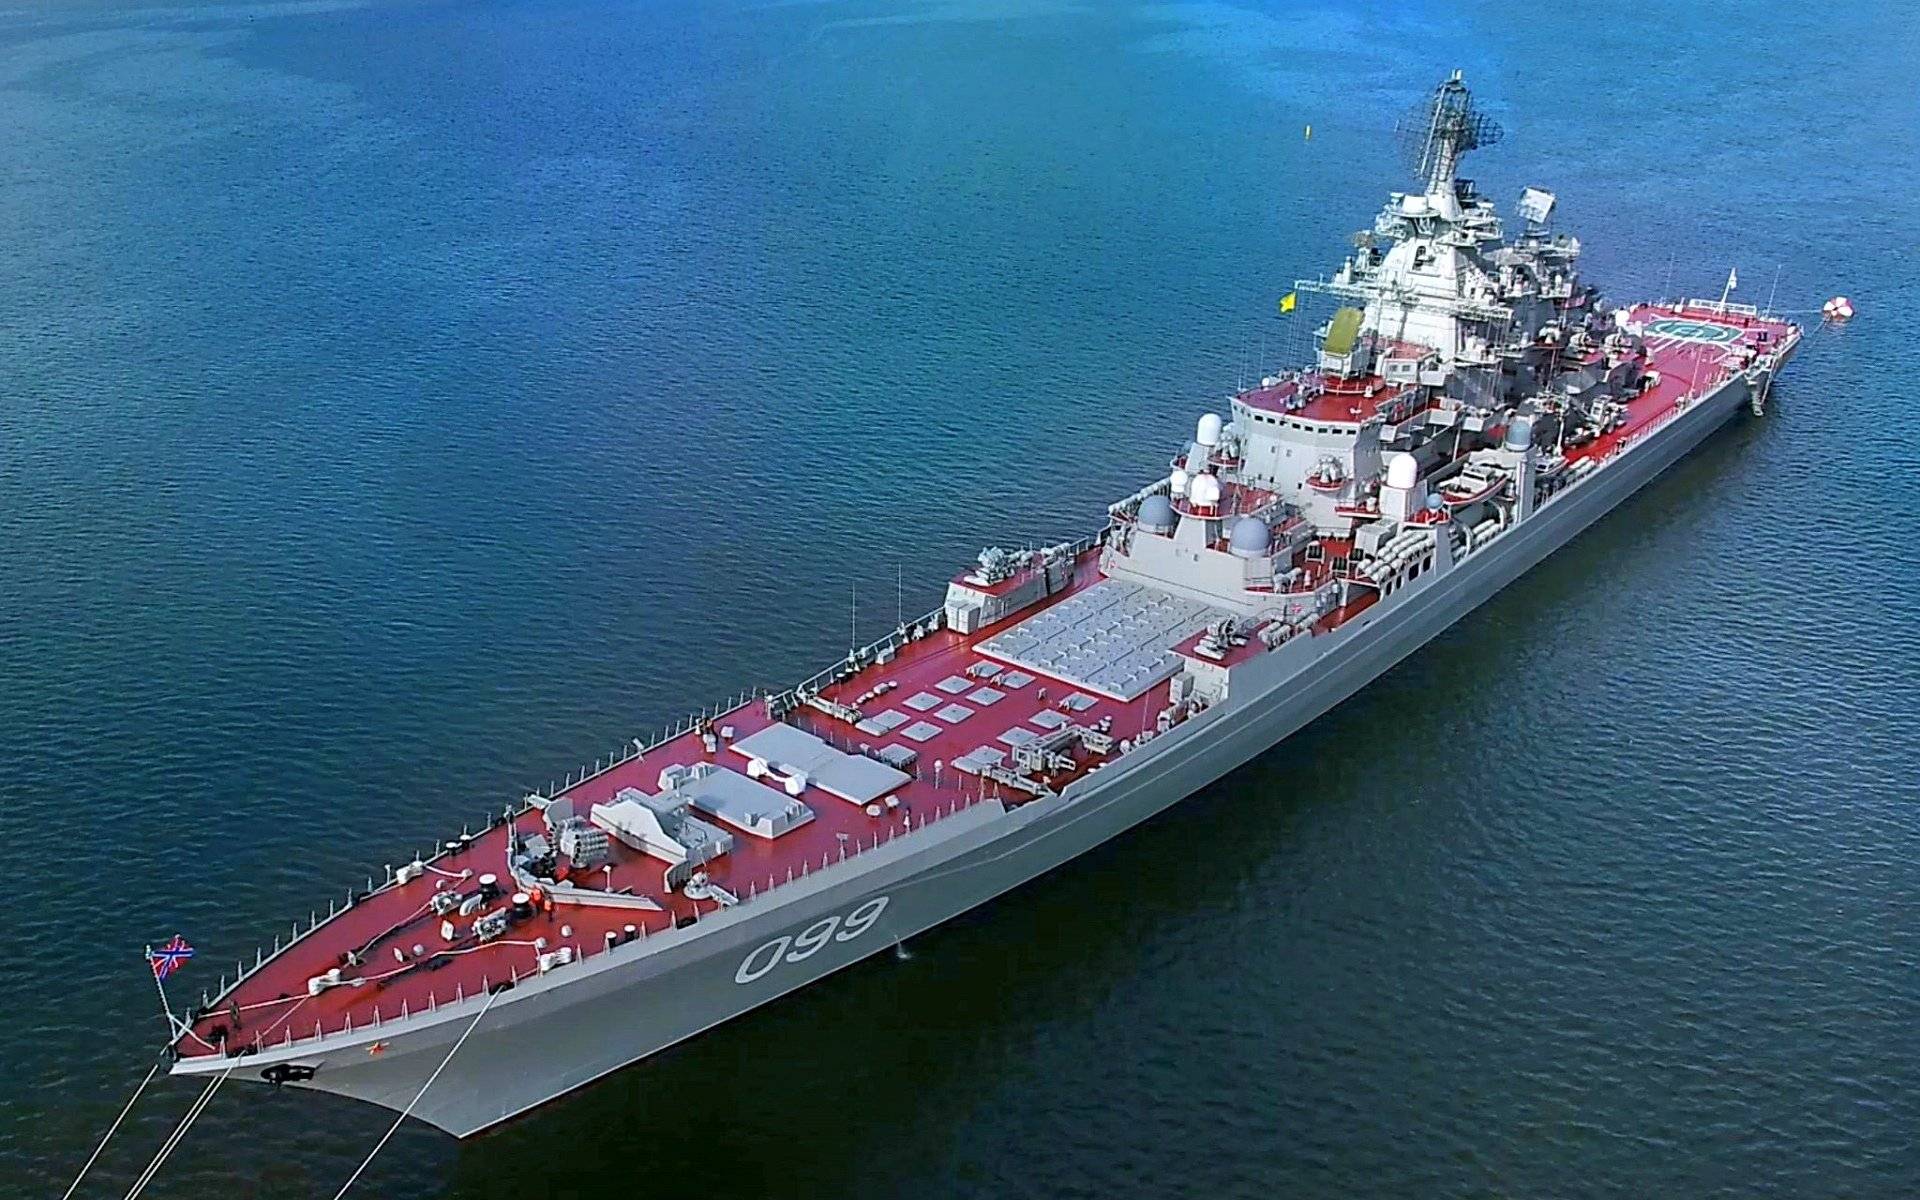 原创俄升级基洛夫级巡洋舰,配置多系列导弹,但仍被美媒质疑!